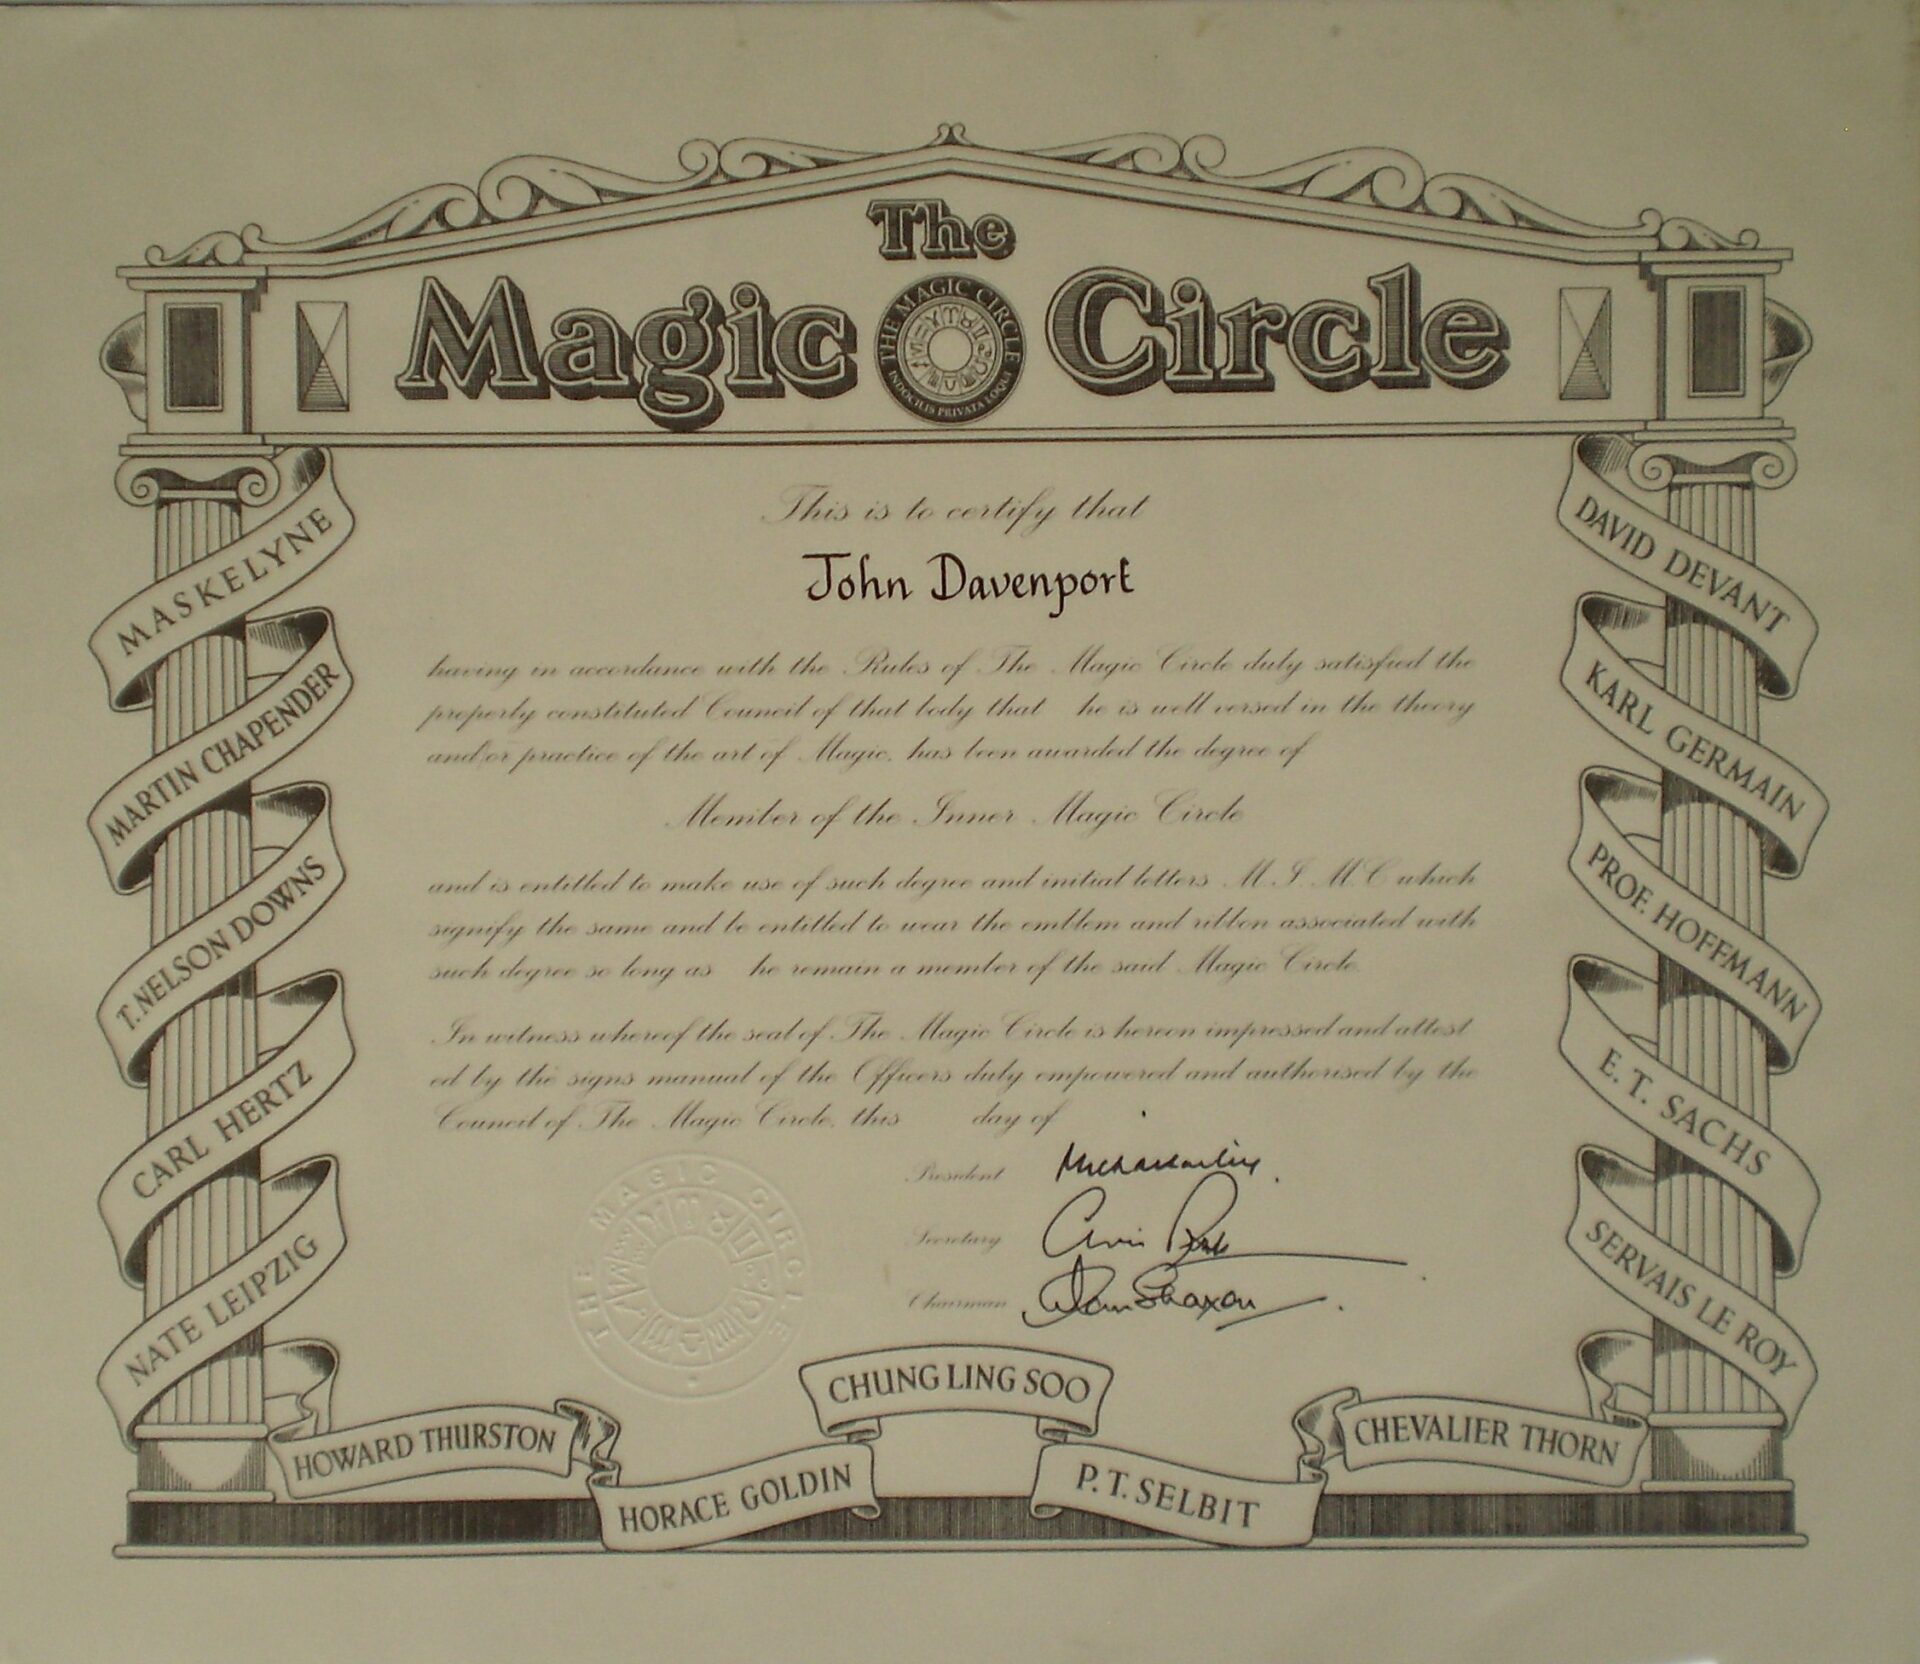 John Davenport’s MIMC certificate from The Magic Circle